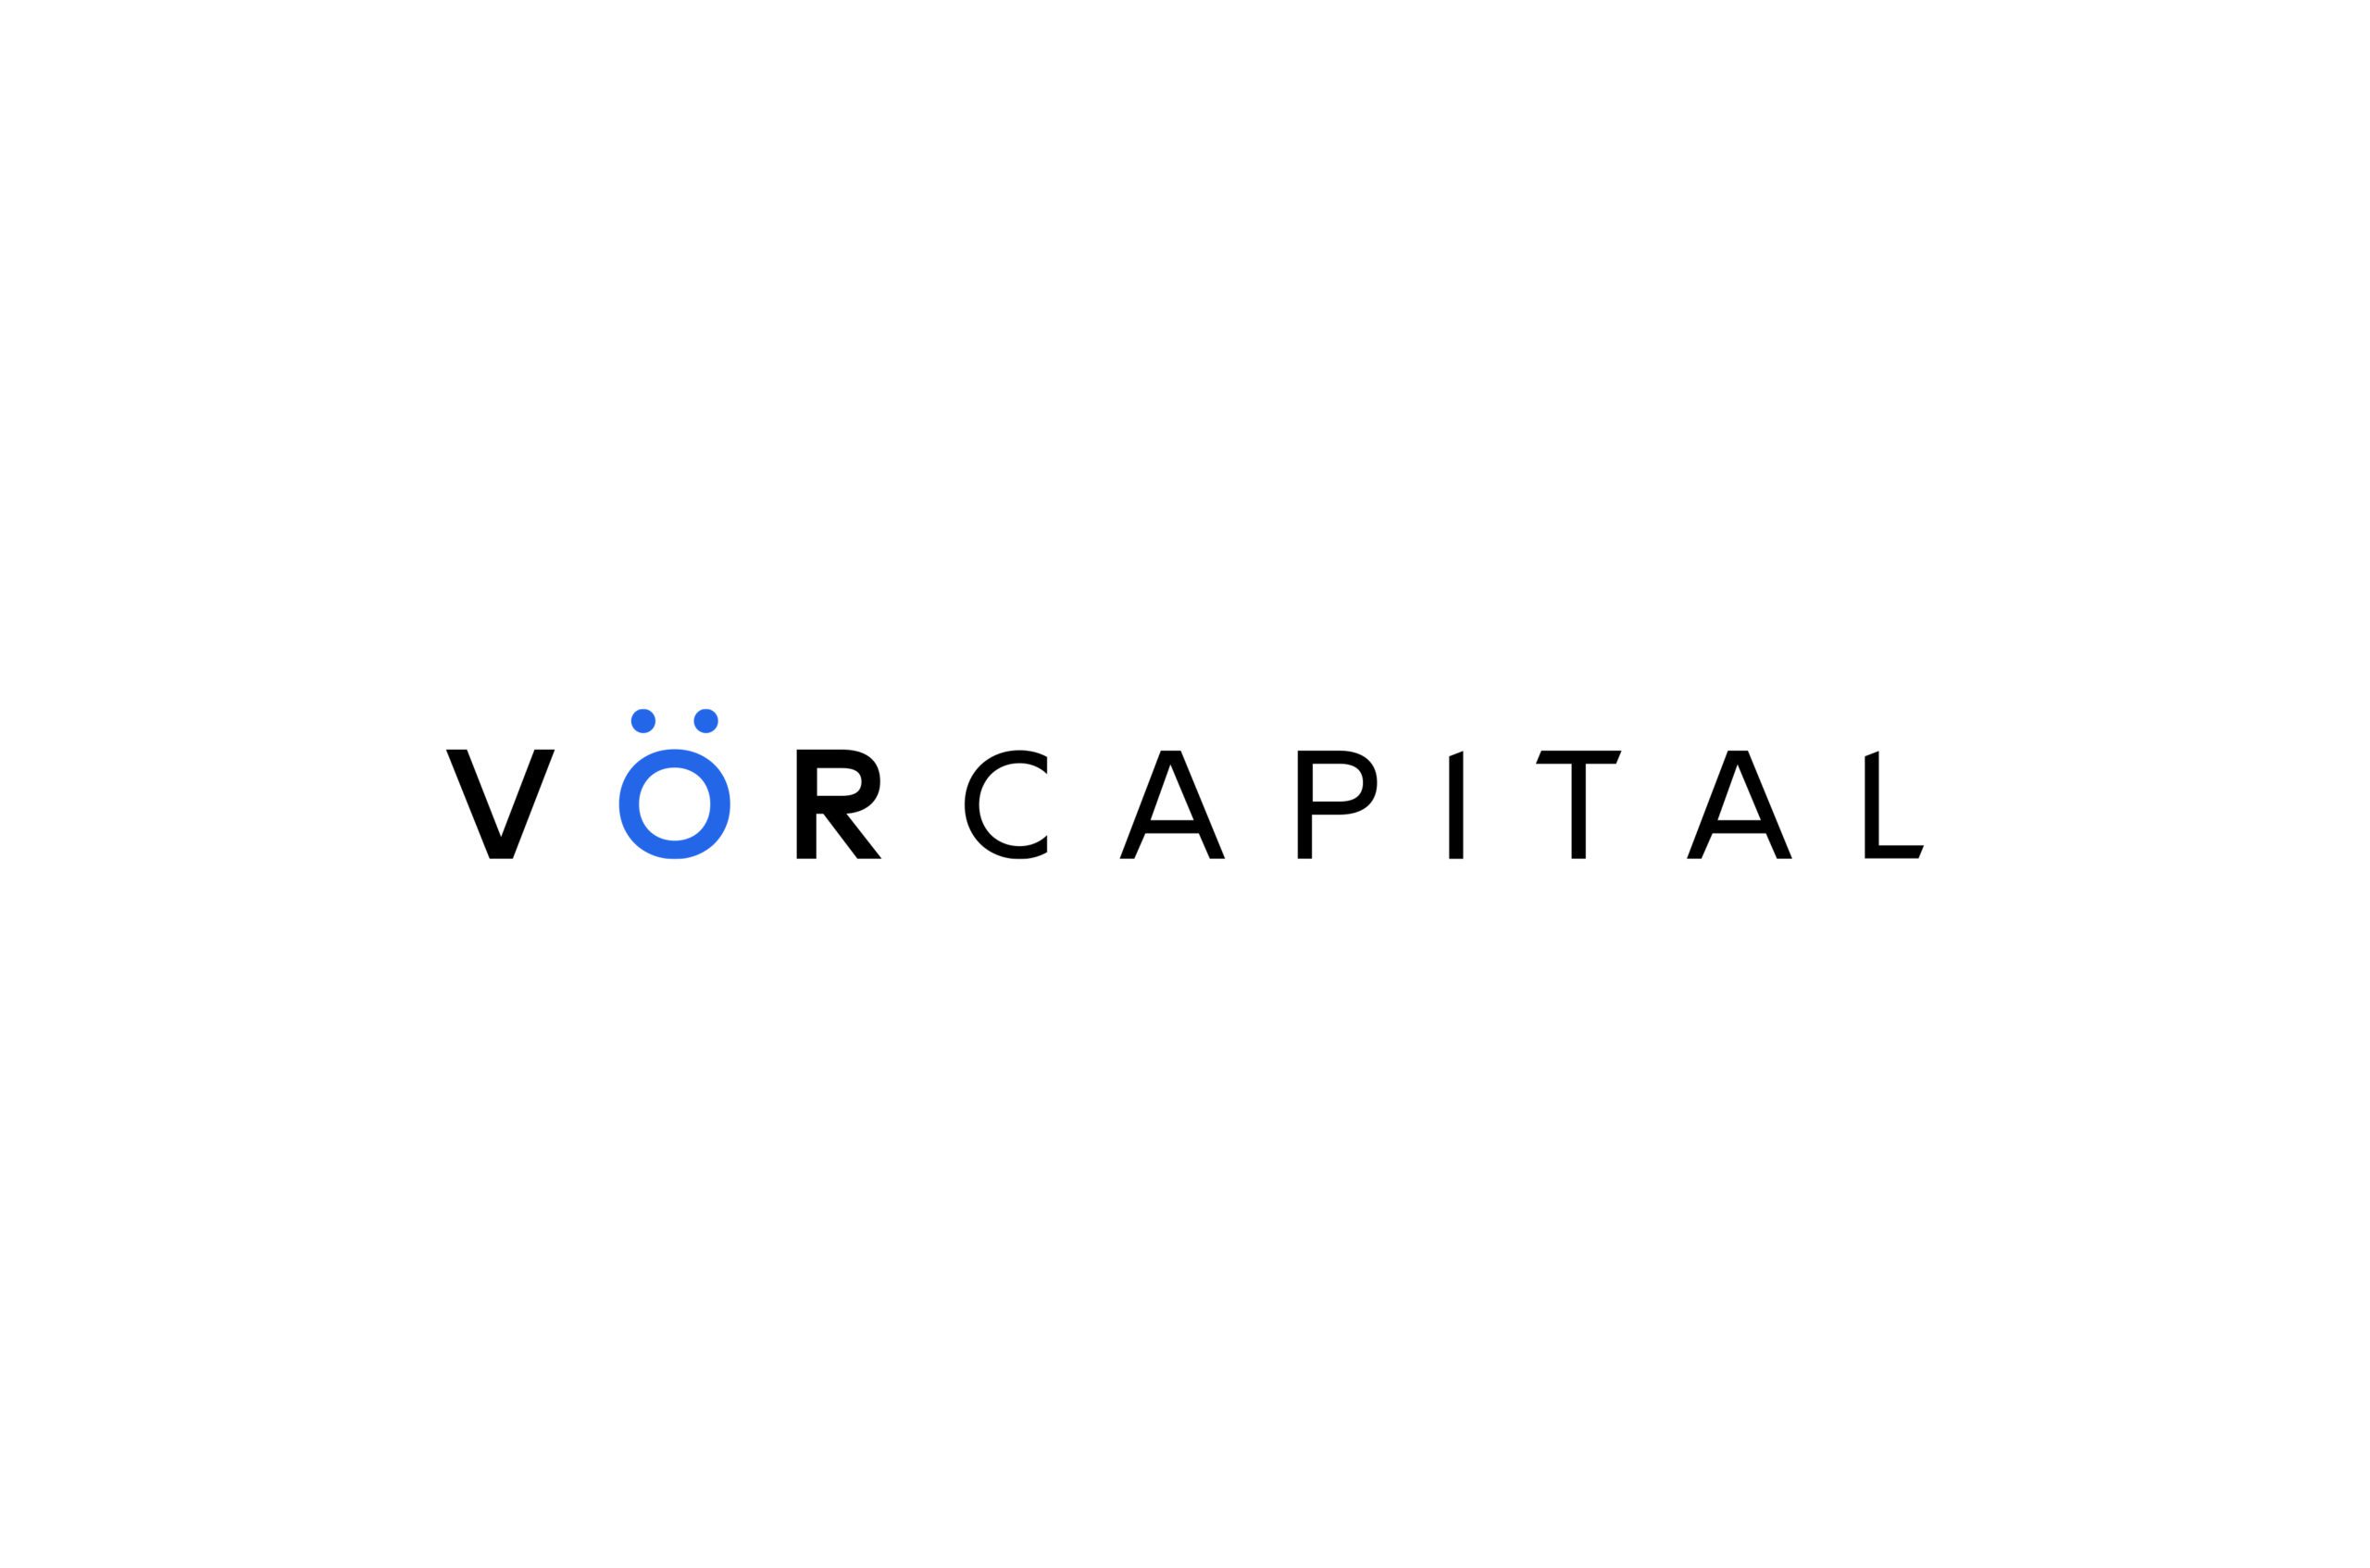 VOR Capital full logo on white